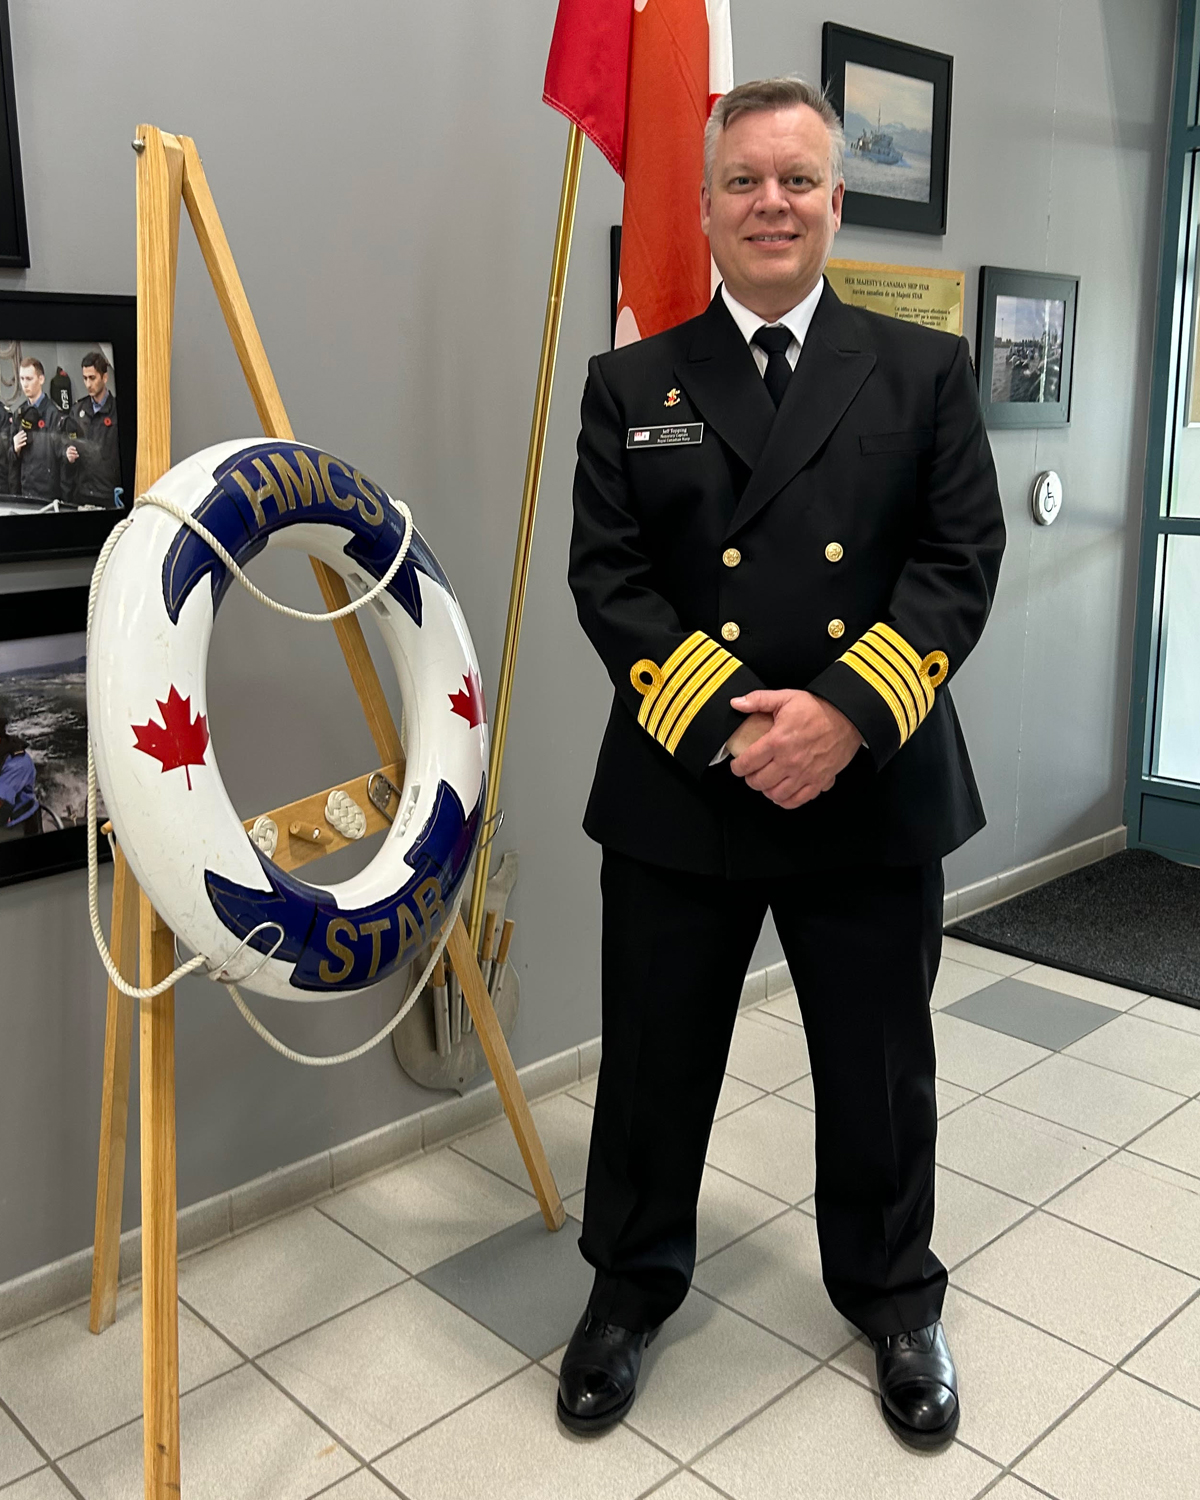 Capitaine de vaisseau honoraire (Capv H) Jeff Topping lors d’une visite à Hamilton, Ont.  Le Capitaine de vaisseau honoraire Topping a récemment été nommé ambassadeur du NCSM Prevost, l’unité de la Réserve navale de London, en Ontario.  Photo : NCSM Star